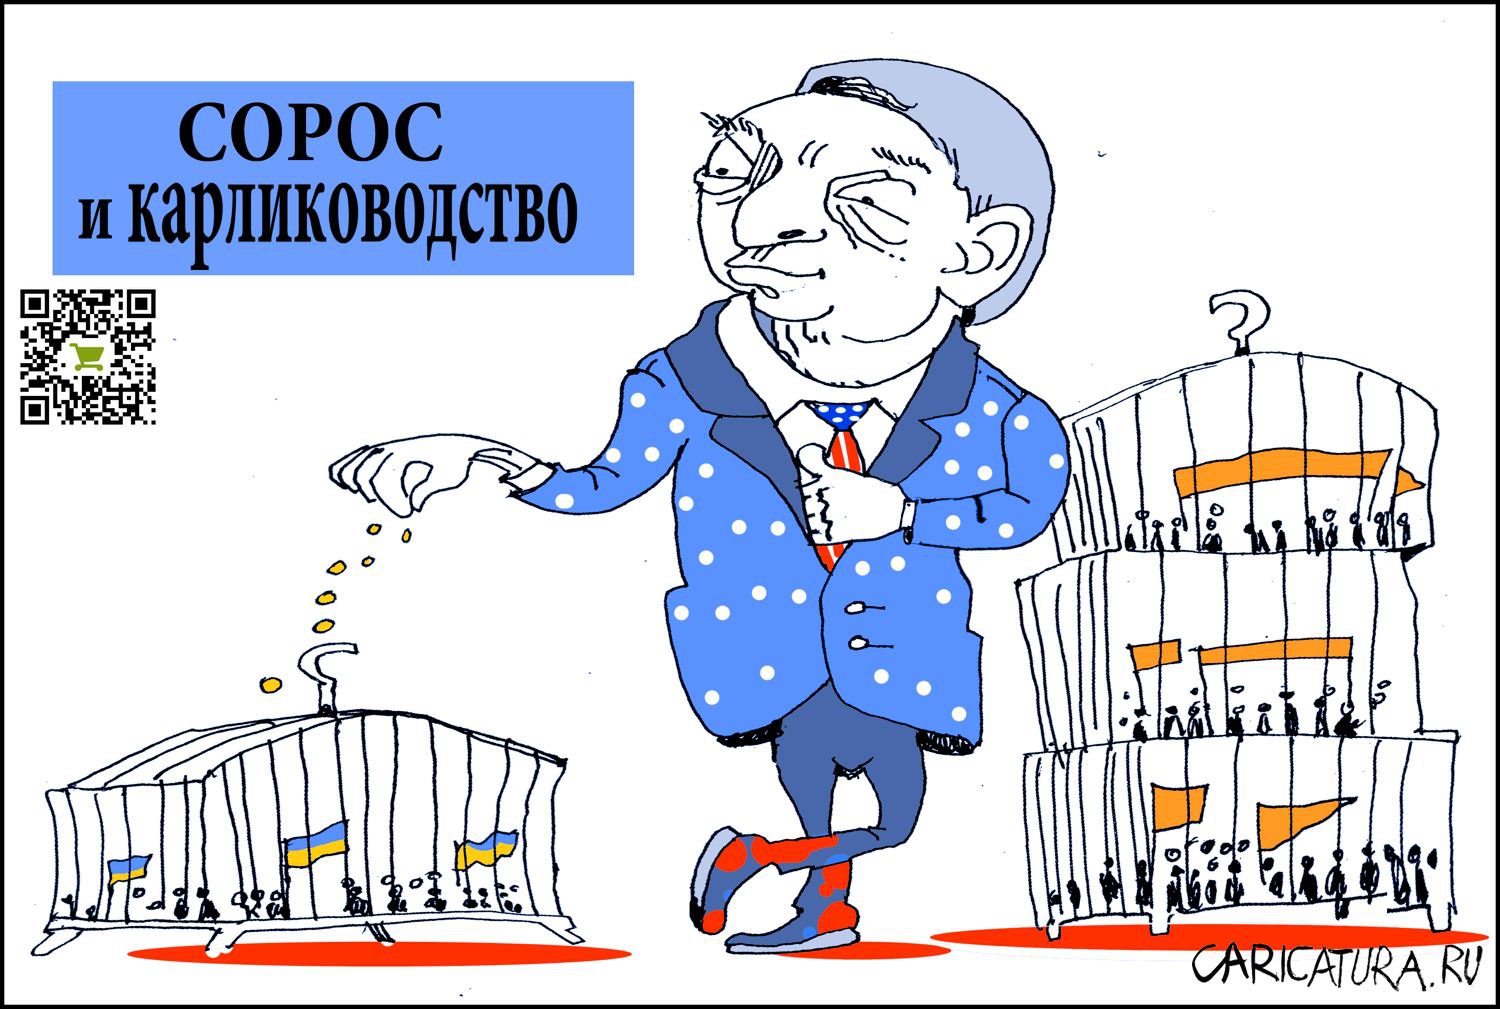 Карикатура "Сорос и карлиководство", Александр Уваров